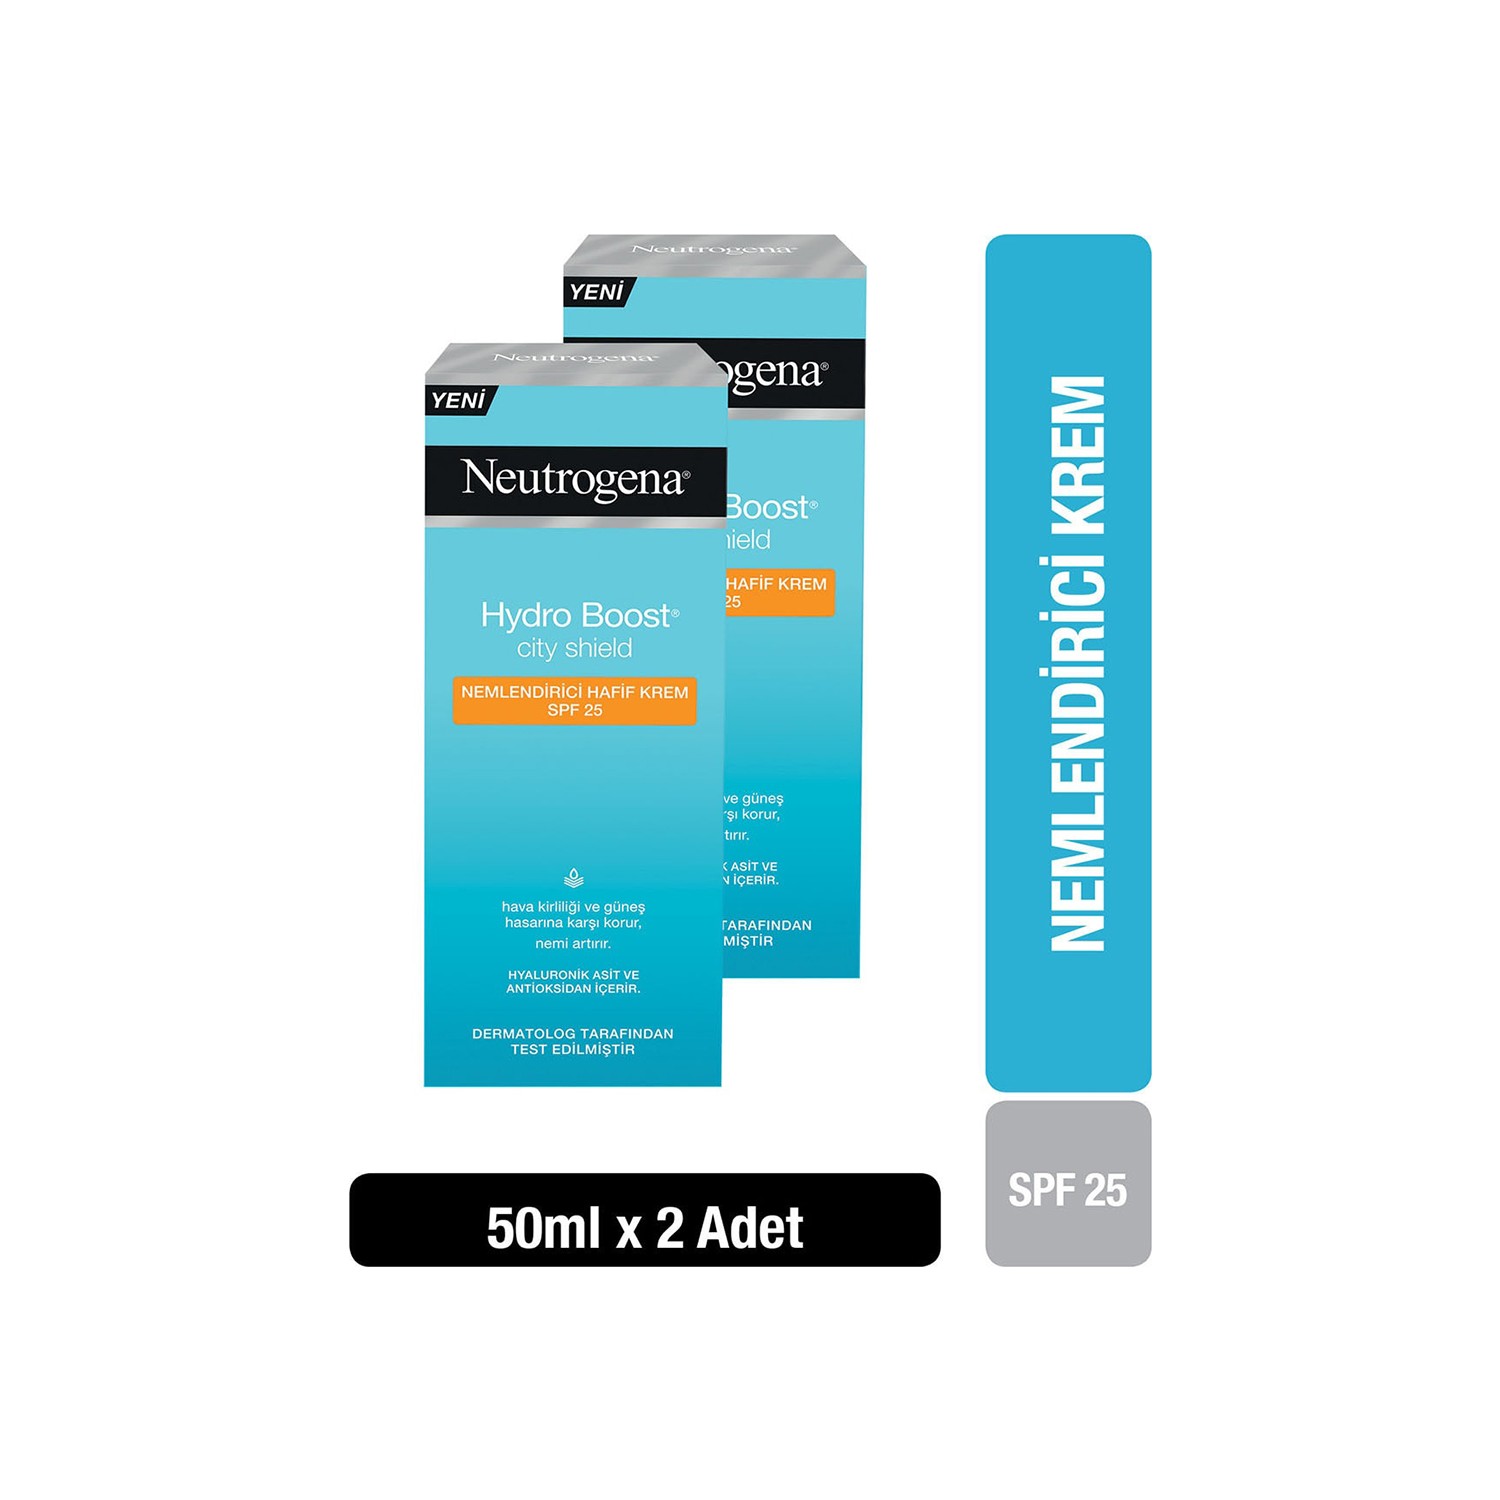 Крем Neutrogena Hydro Boost SPF25 увлажняющий, 2 упаковки по 50 мл neutrogena hydro boost увлажняющий консилер fair 10 3 4 г 0 12 унции